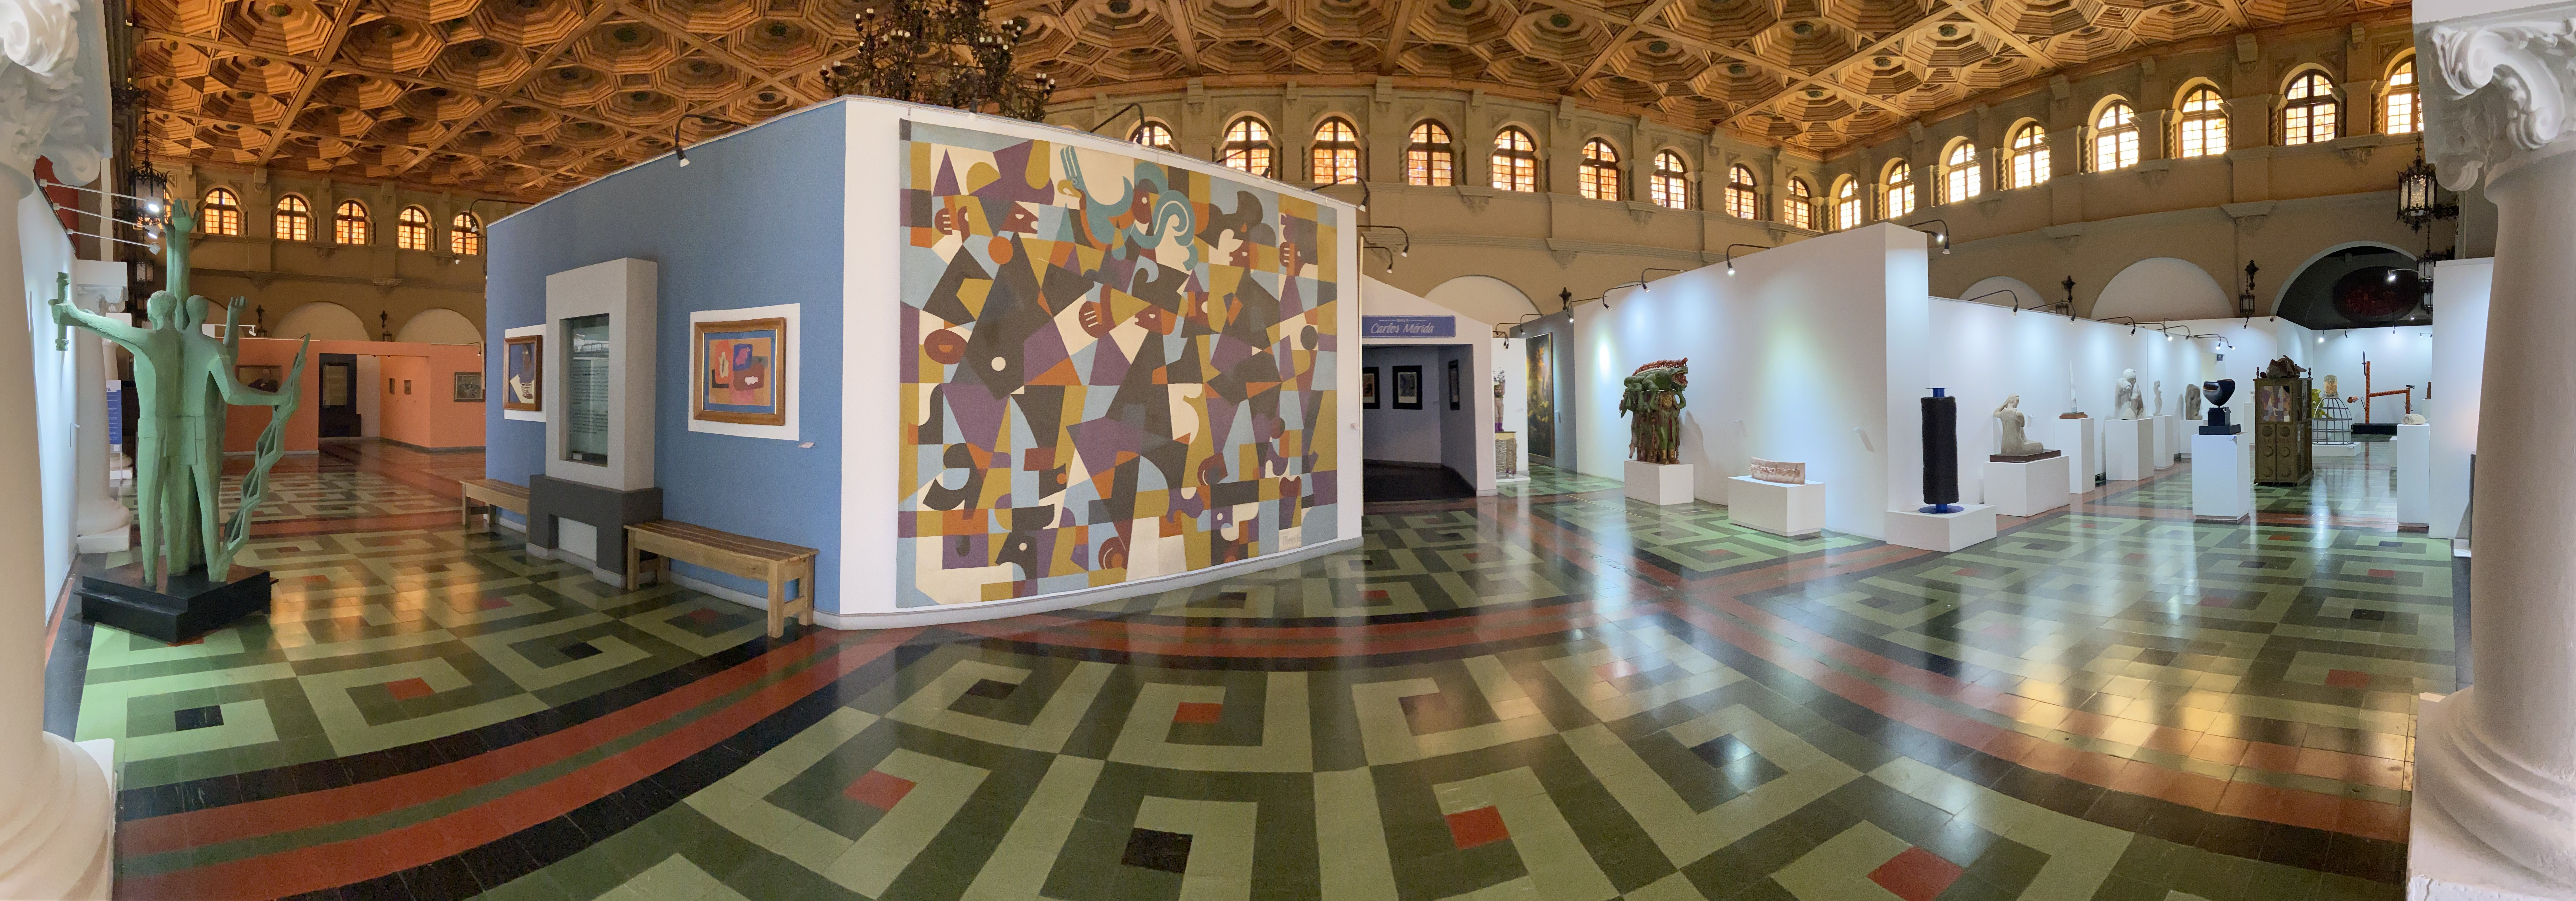 Obras de arte de escultura moderna y contemporánea se expondrán en el Museo Nacional de Arte Moderno Carlos Mérida 